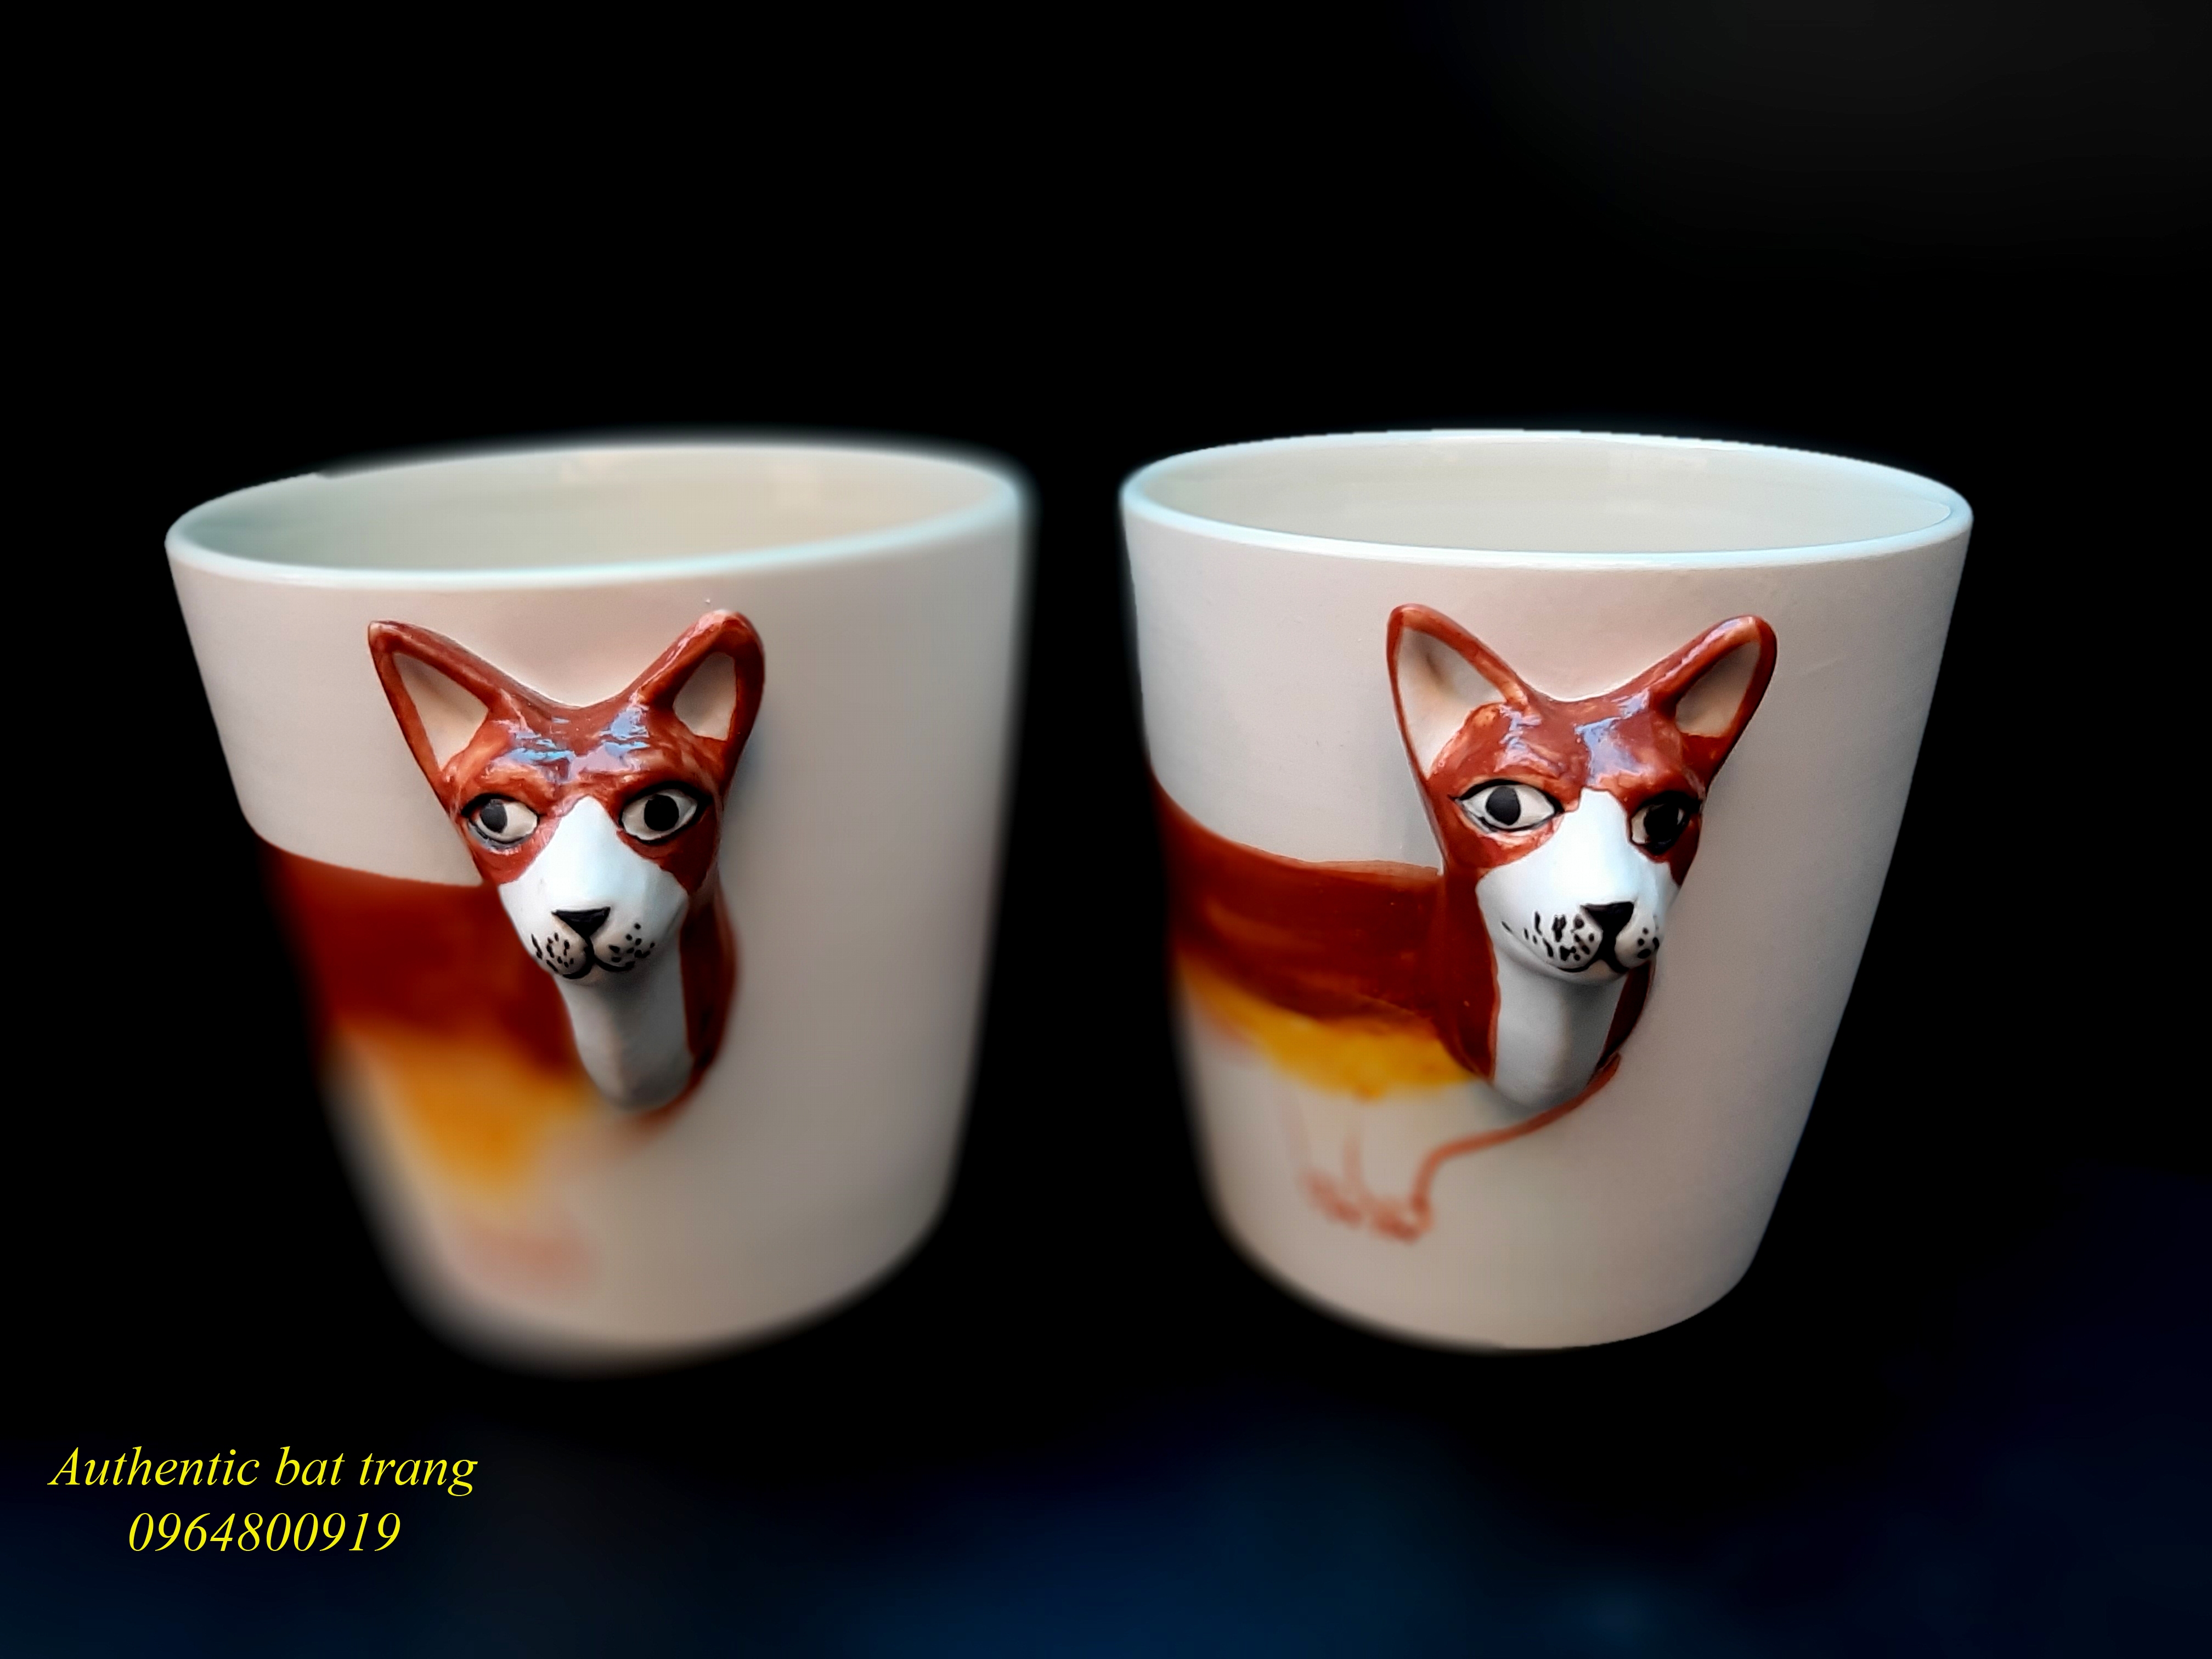 Animals cups- Cốc động vật sản phẩm vẽ tay và đắp tay thủ côc độc đáo, sản xuất tại xưởng gốm sứ Authentic bat trang